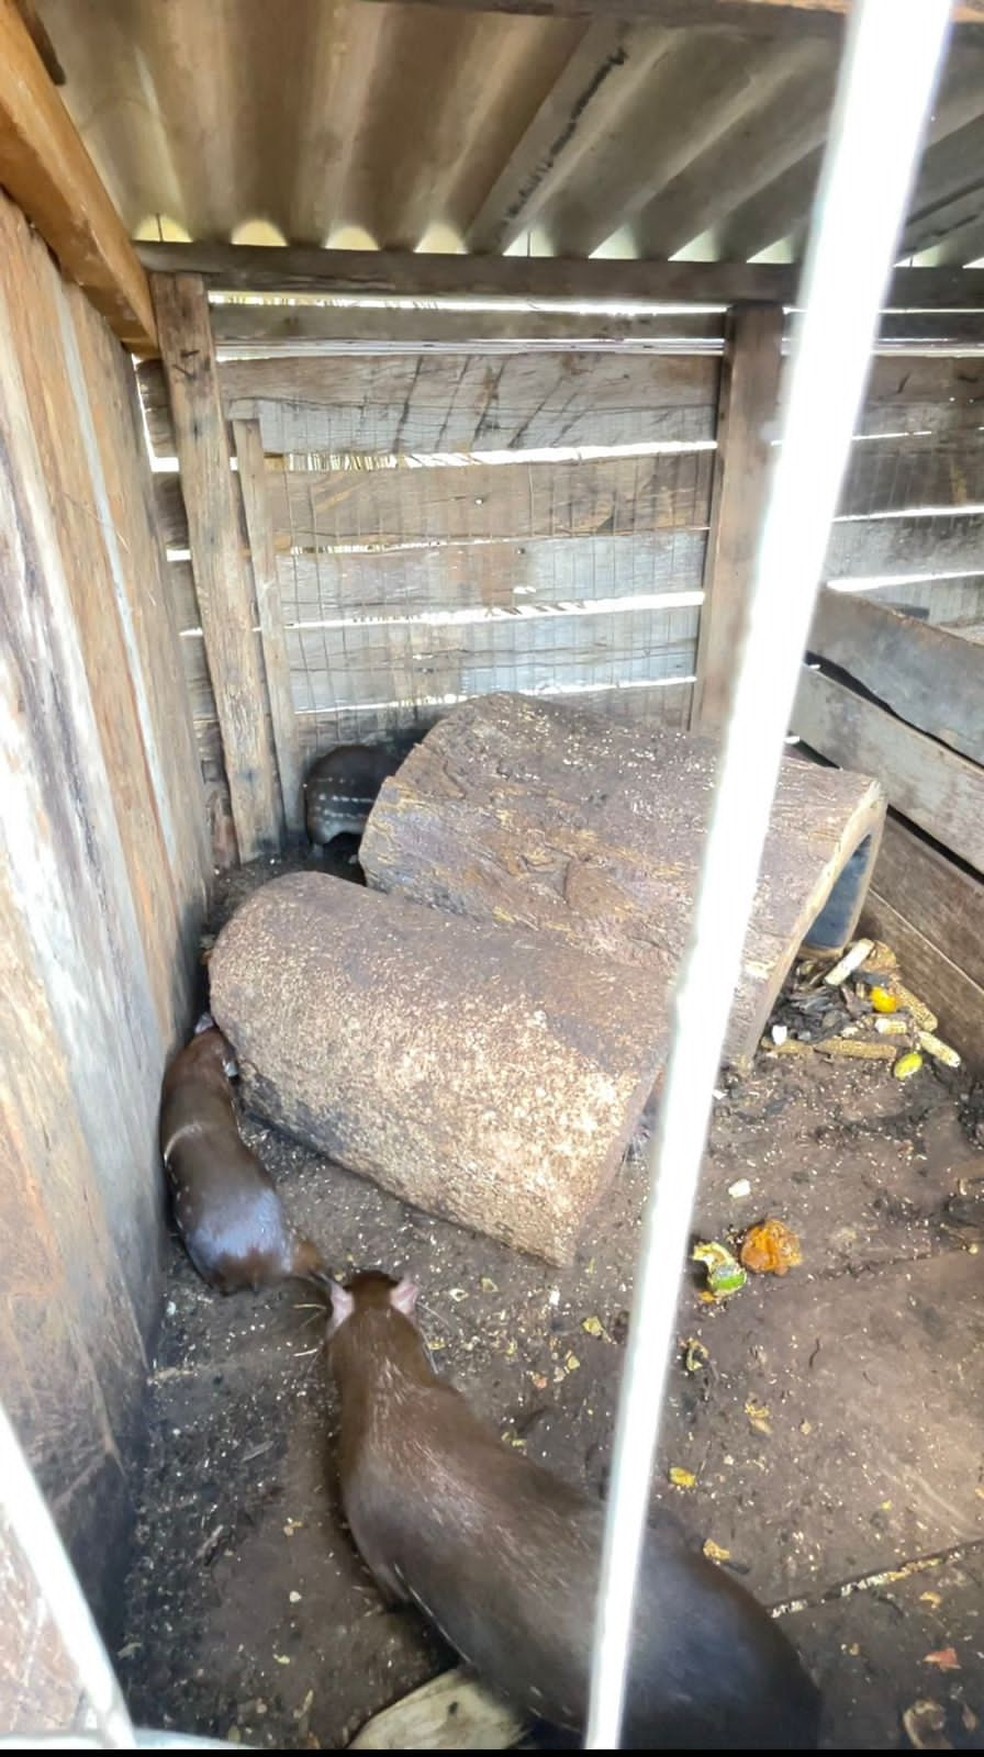 Os animais foram encontrados dentro de uma casinha e viviam presos, em uma situação insalubre. — Foto: Sema